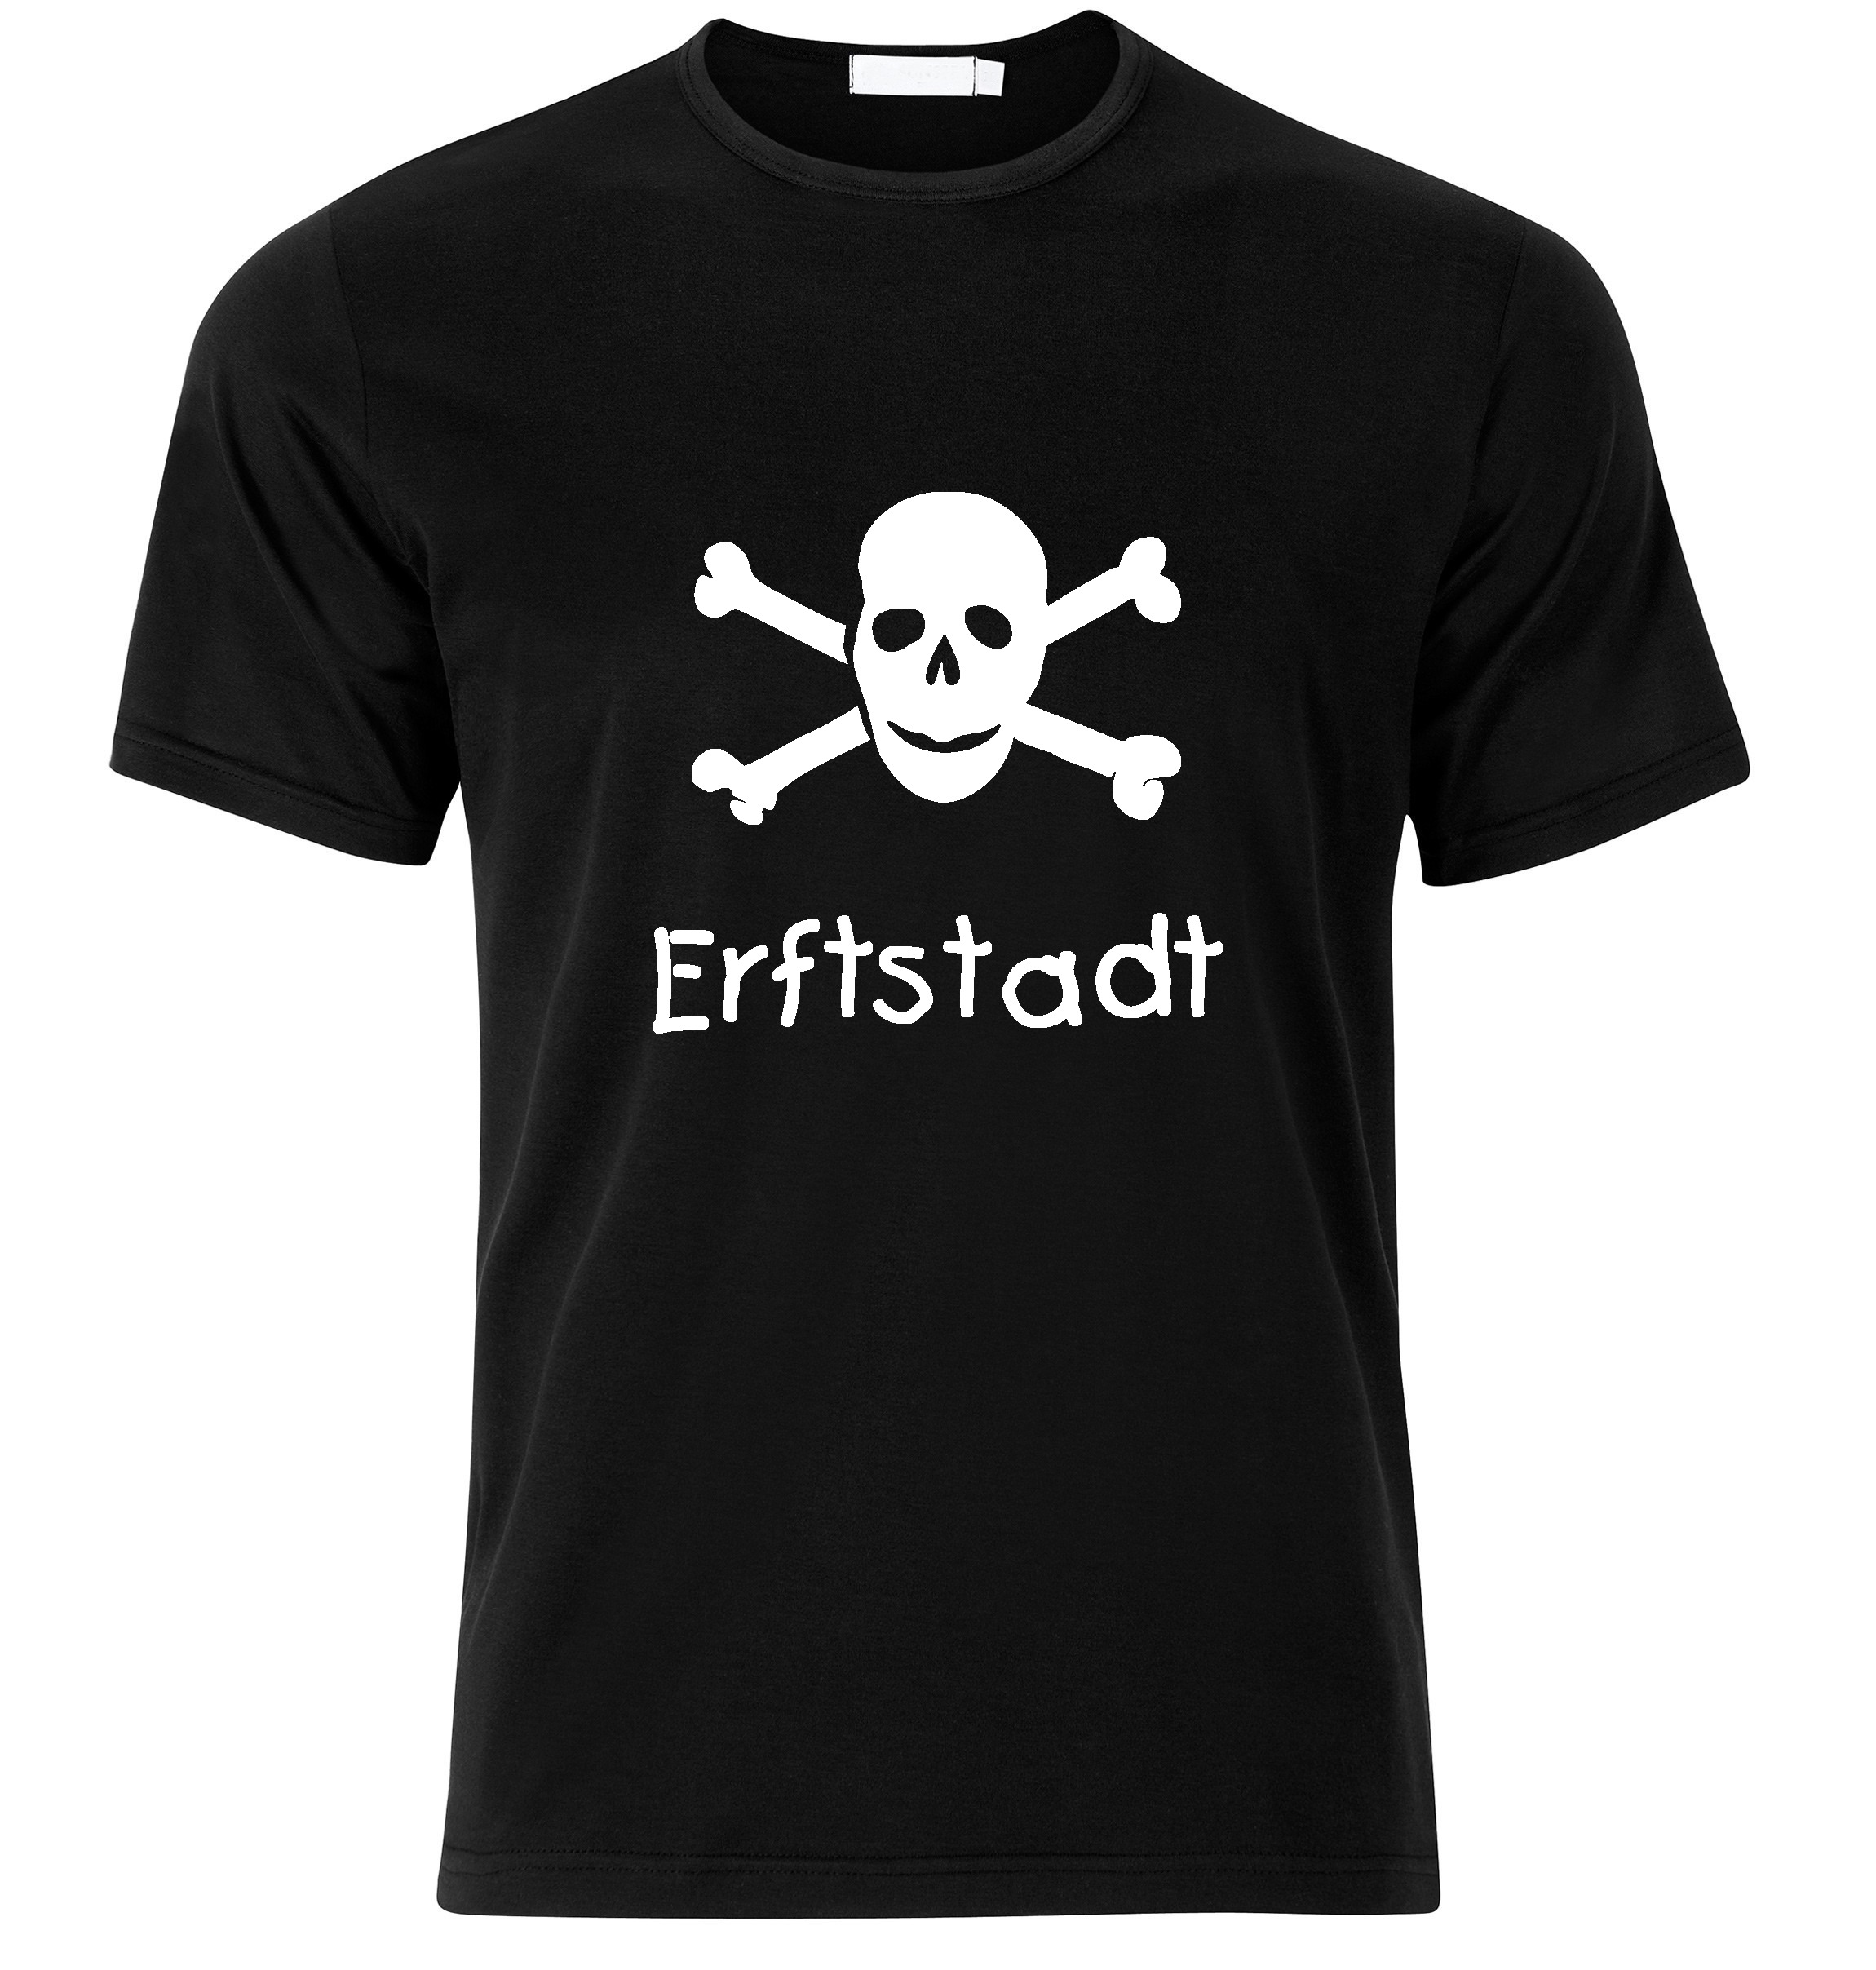 T-Shirt Erftstadt Jolly Roger, Totenkopf